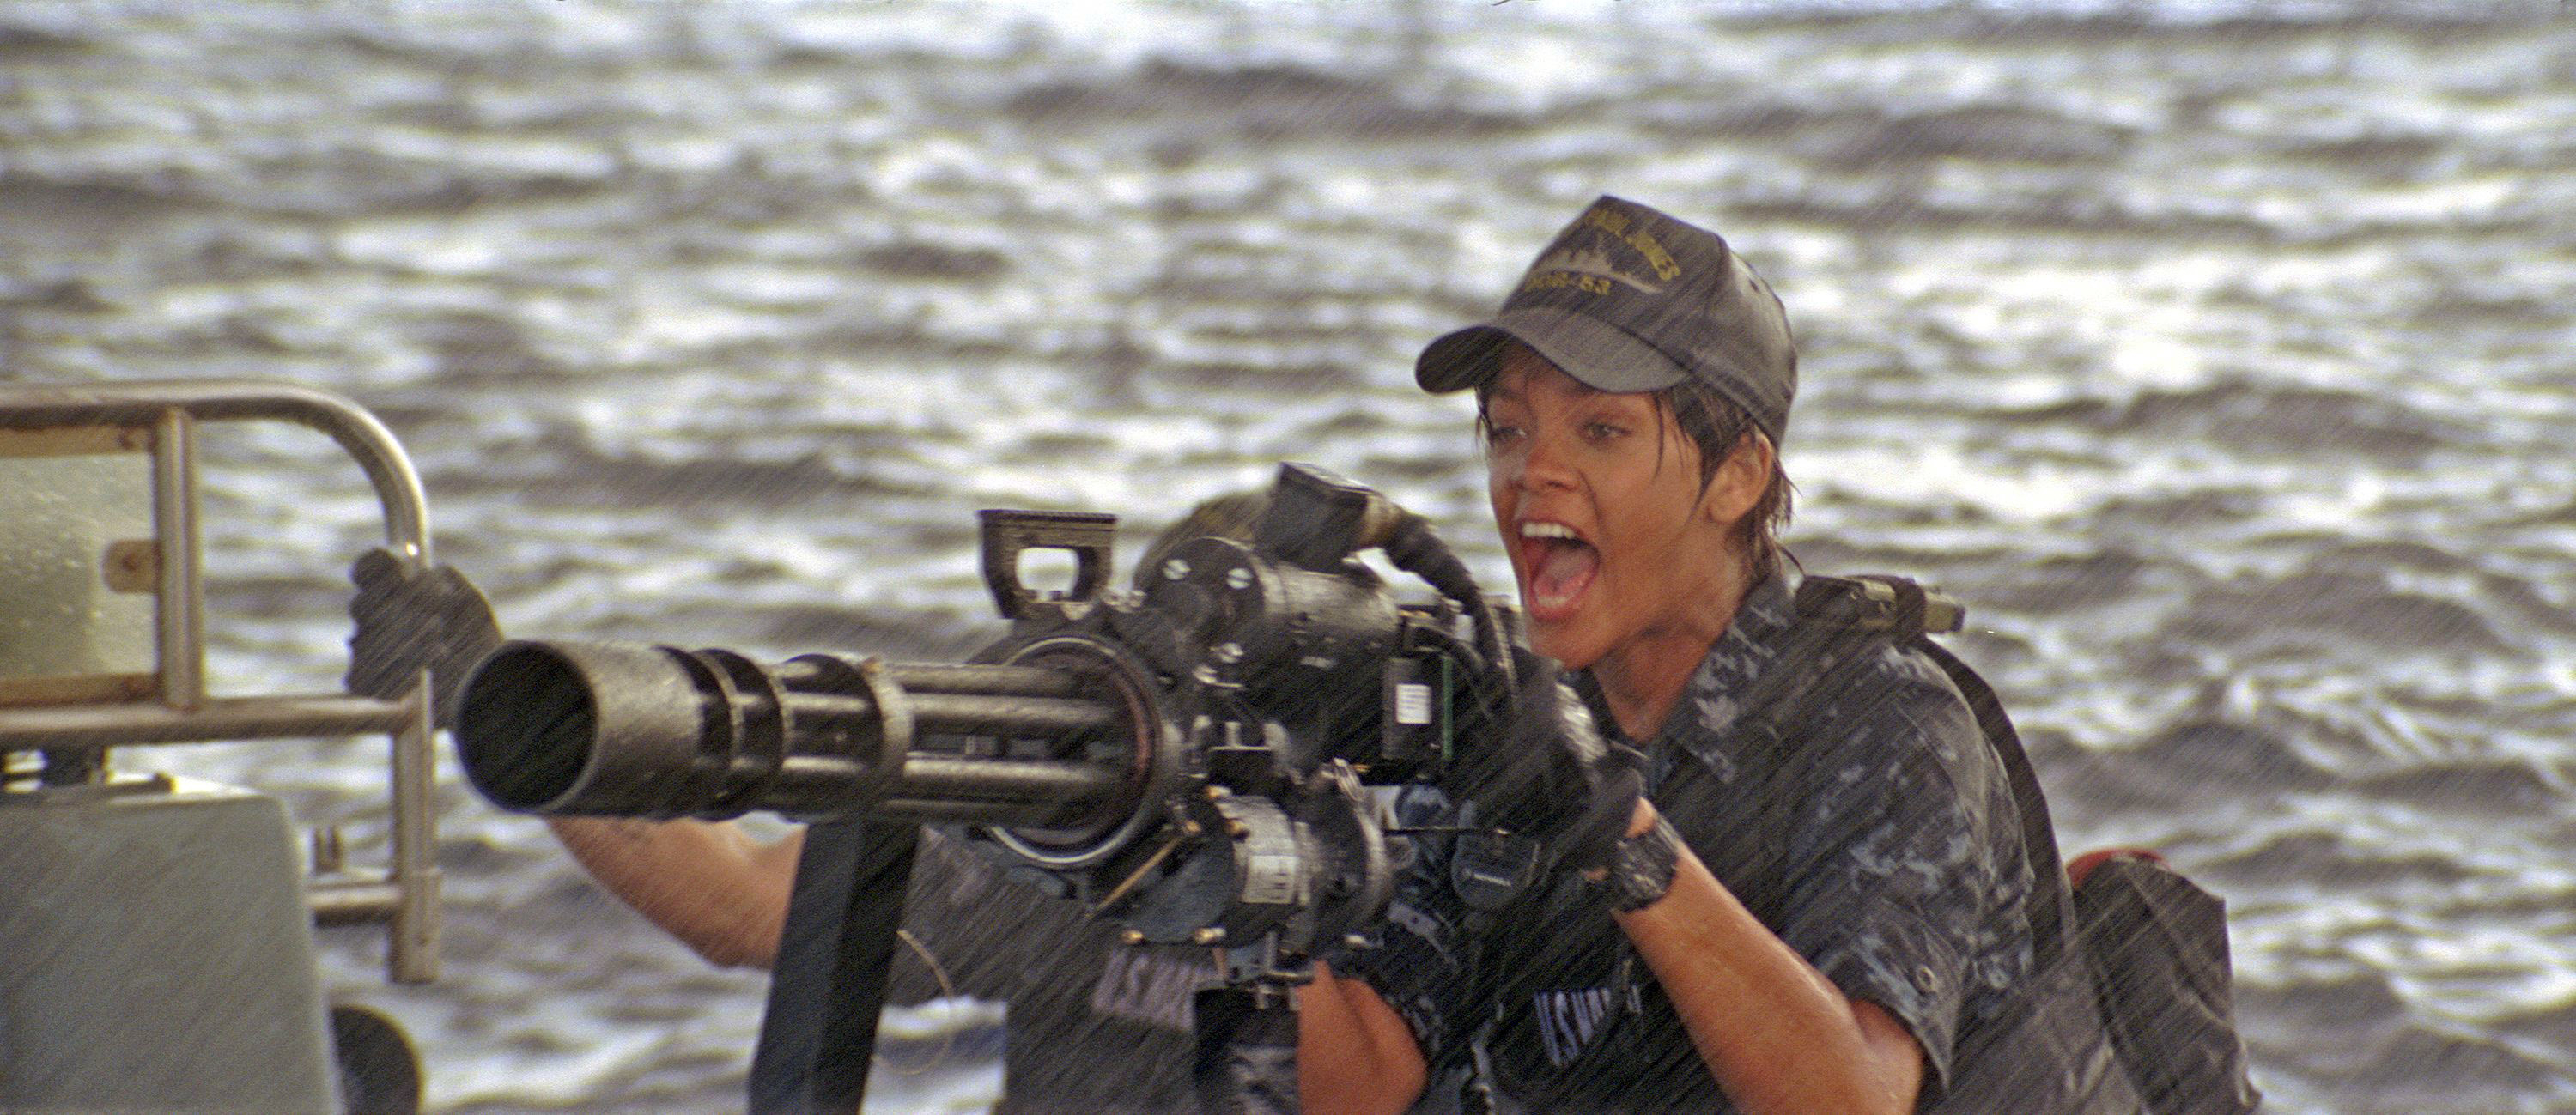 Rihanna aiming a large weapon at sea